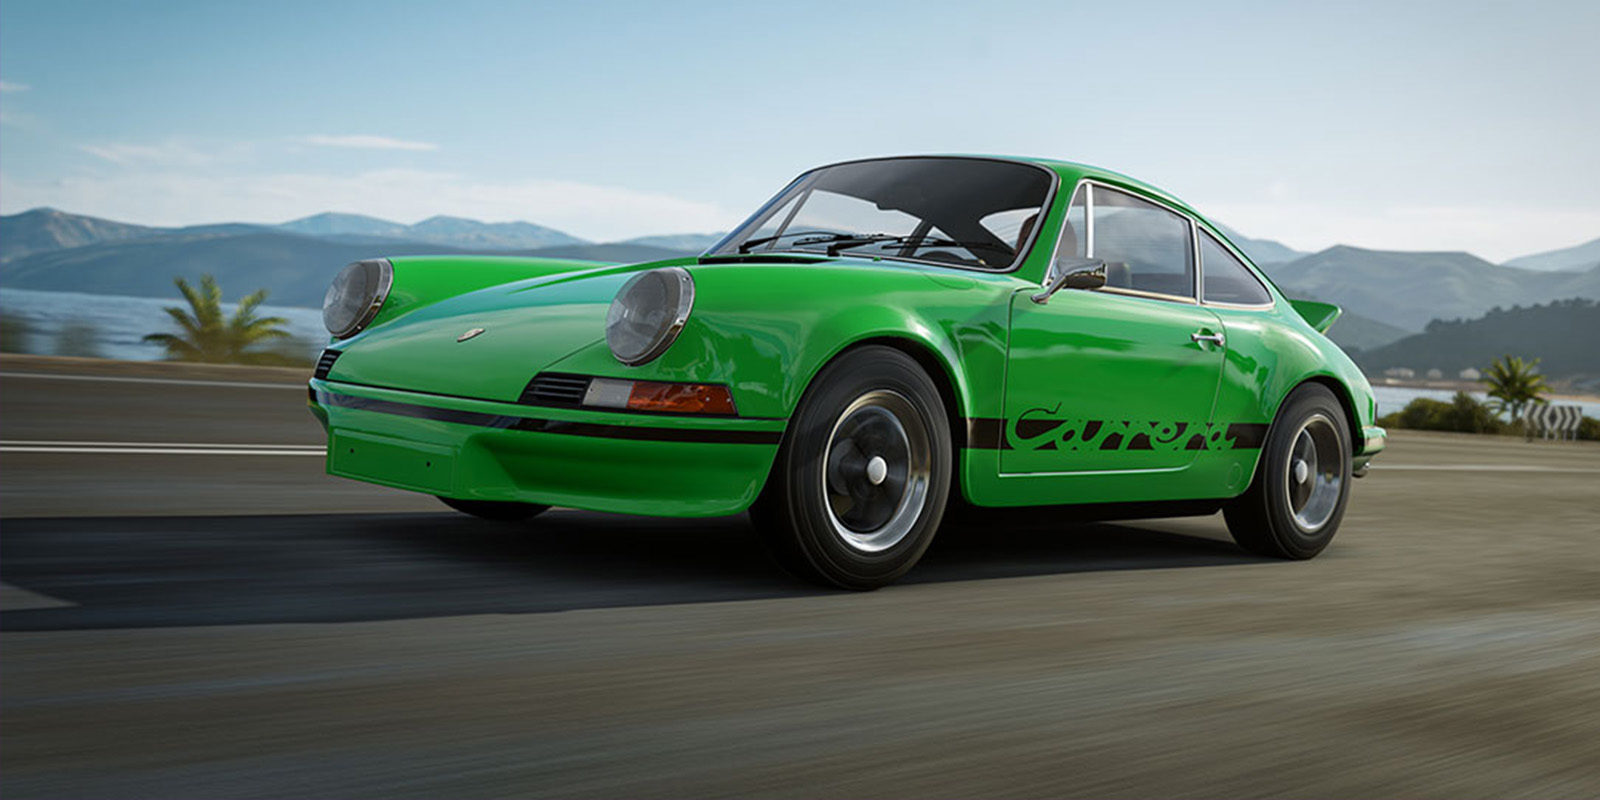 Los próximos 'Forza Motorsport' incluirán vehículos Porsche desde el lanzamiento